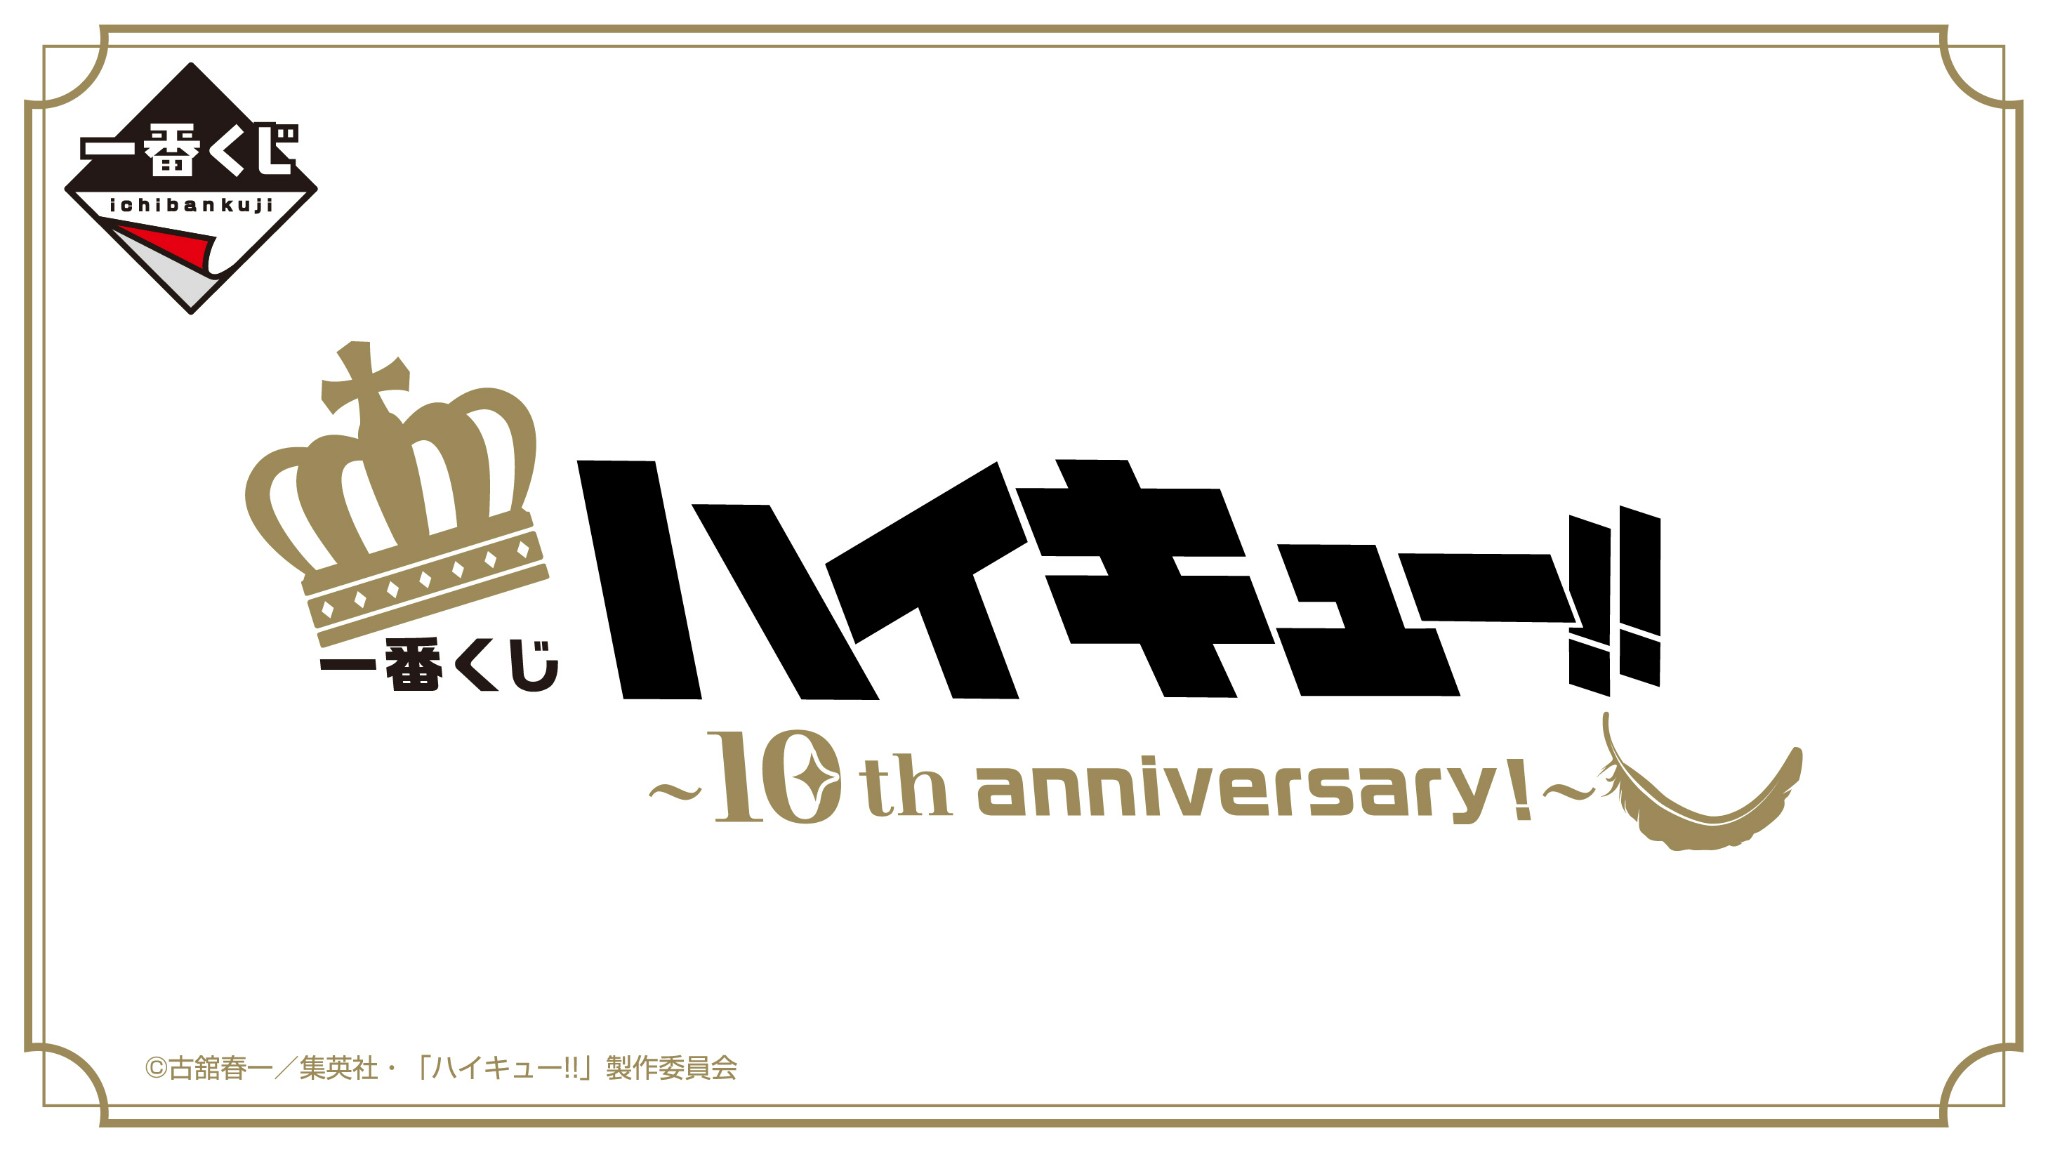 「ハイキュー!! ～10th anniversary！～」